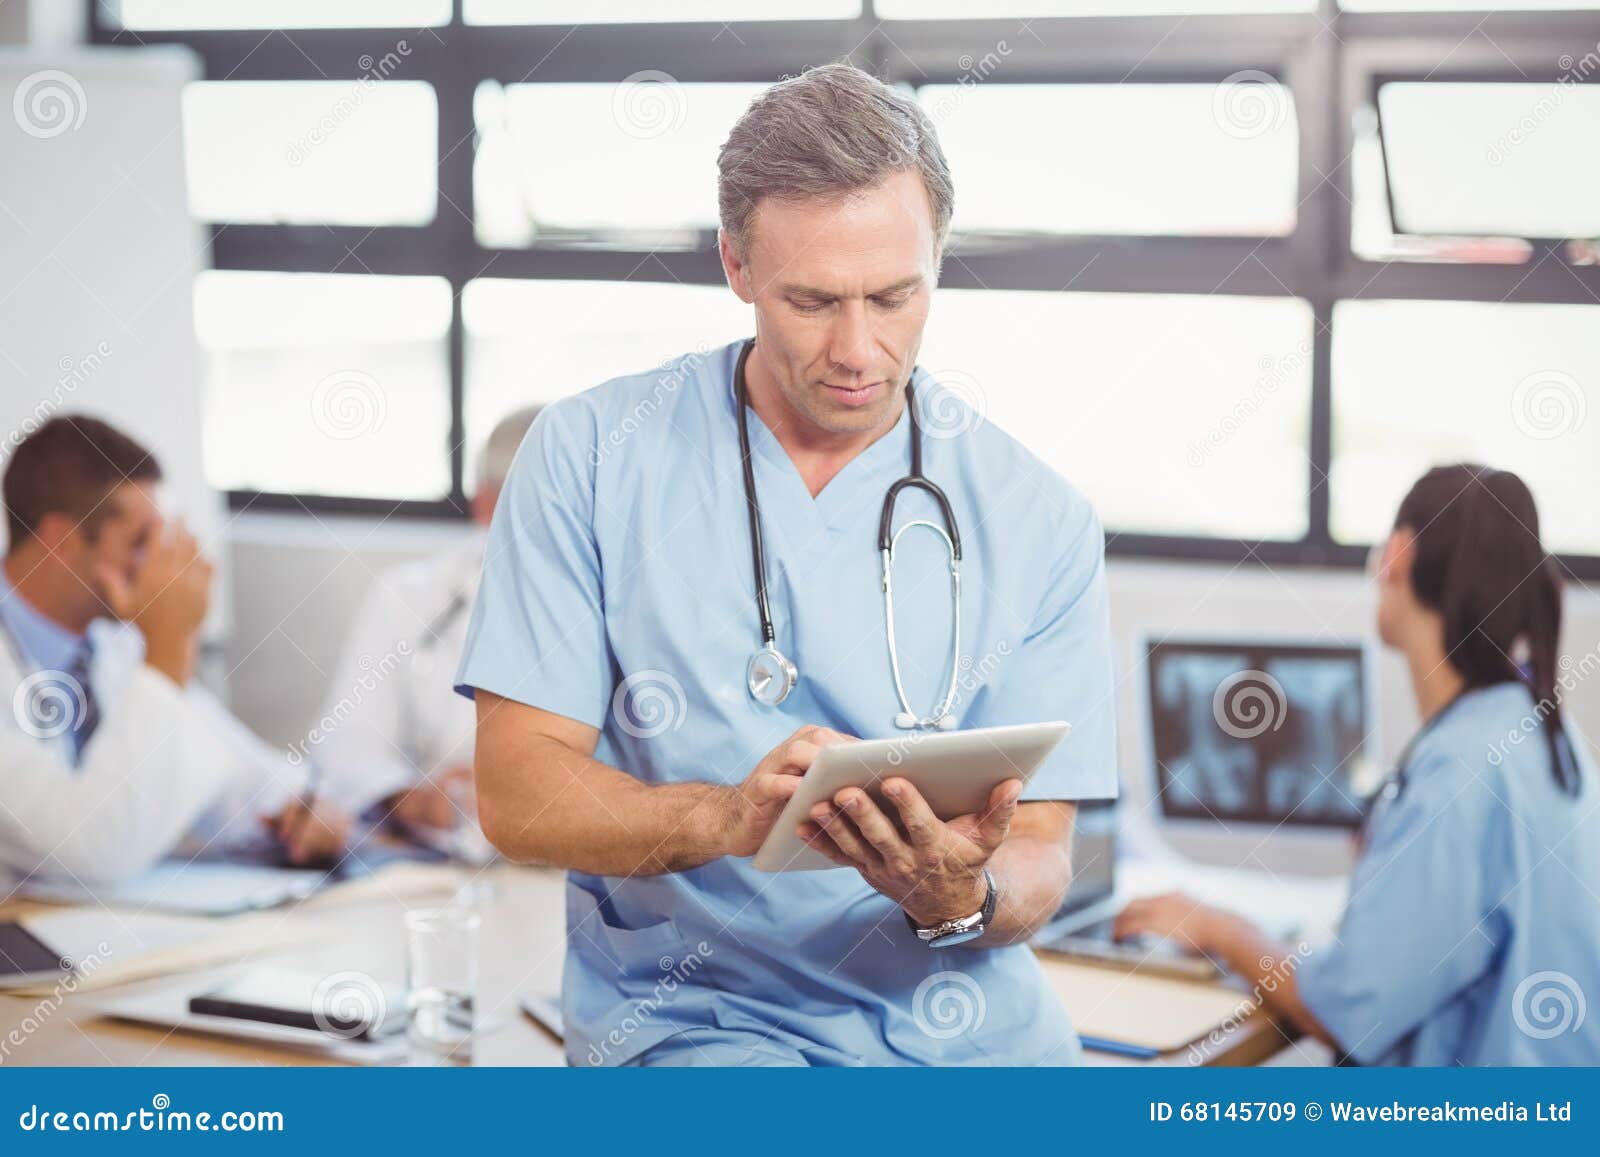 Врач 1 уровня. Медик с планшетом. Врач мужчина с планшетом. Врач будущего. Фото врача с планшетом.